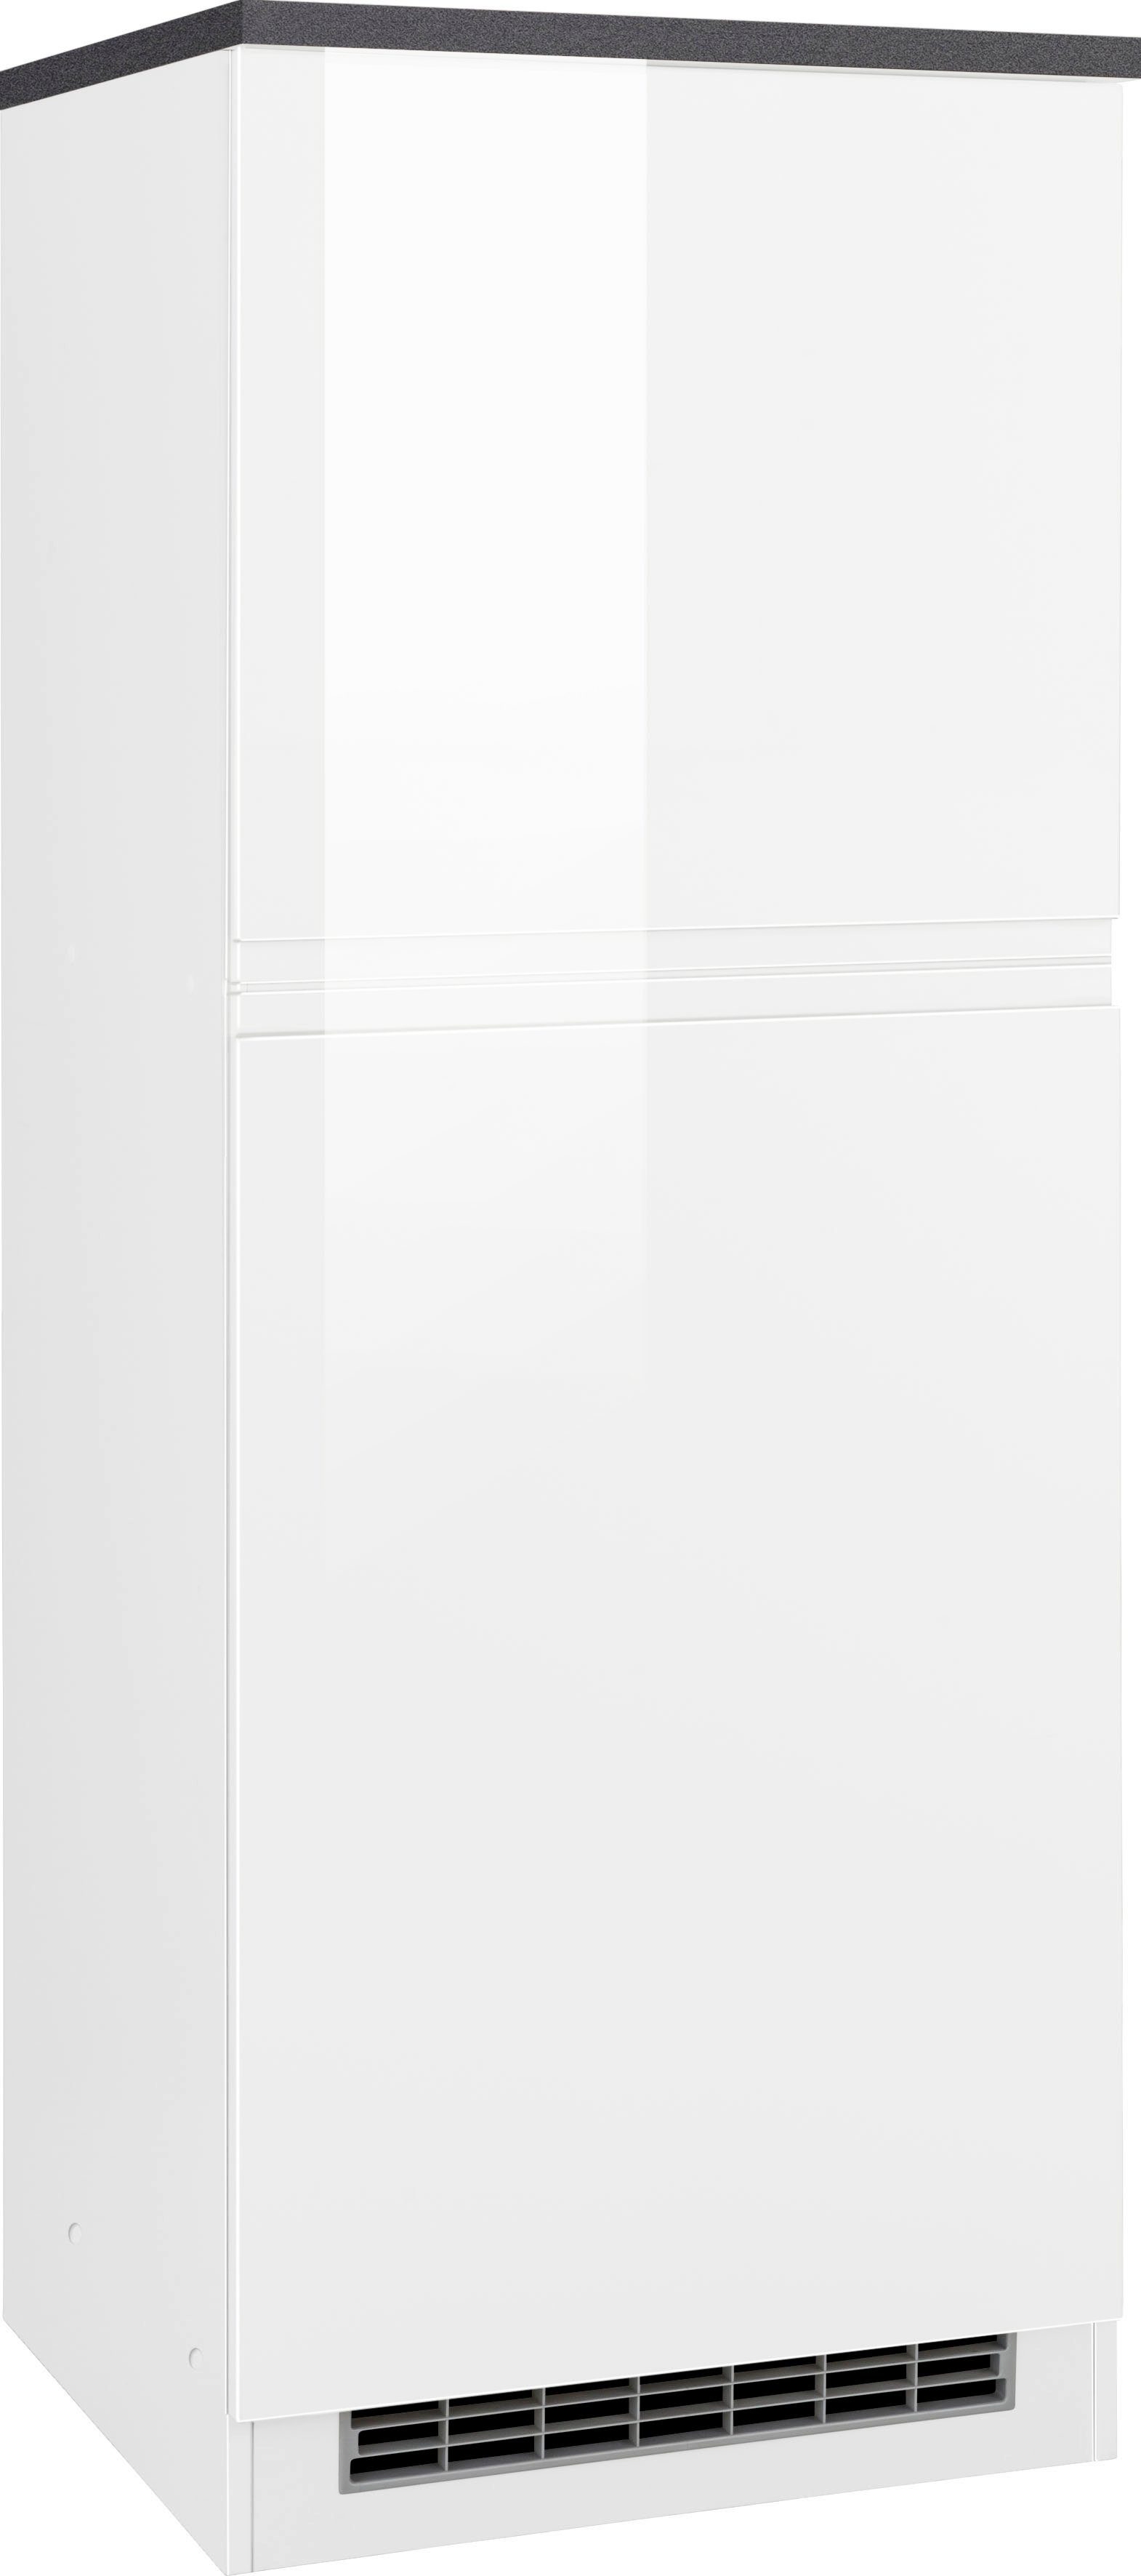 HELD MÖBEL Kühlumbauschrank Virginia 165 cm hoch, 60 cm breit, Nische für Kühlschrank: 56/88/55 cm, 2 Türen weiß Hochglanz/anthrazit | weiß | Umbauschränke